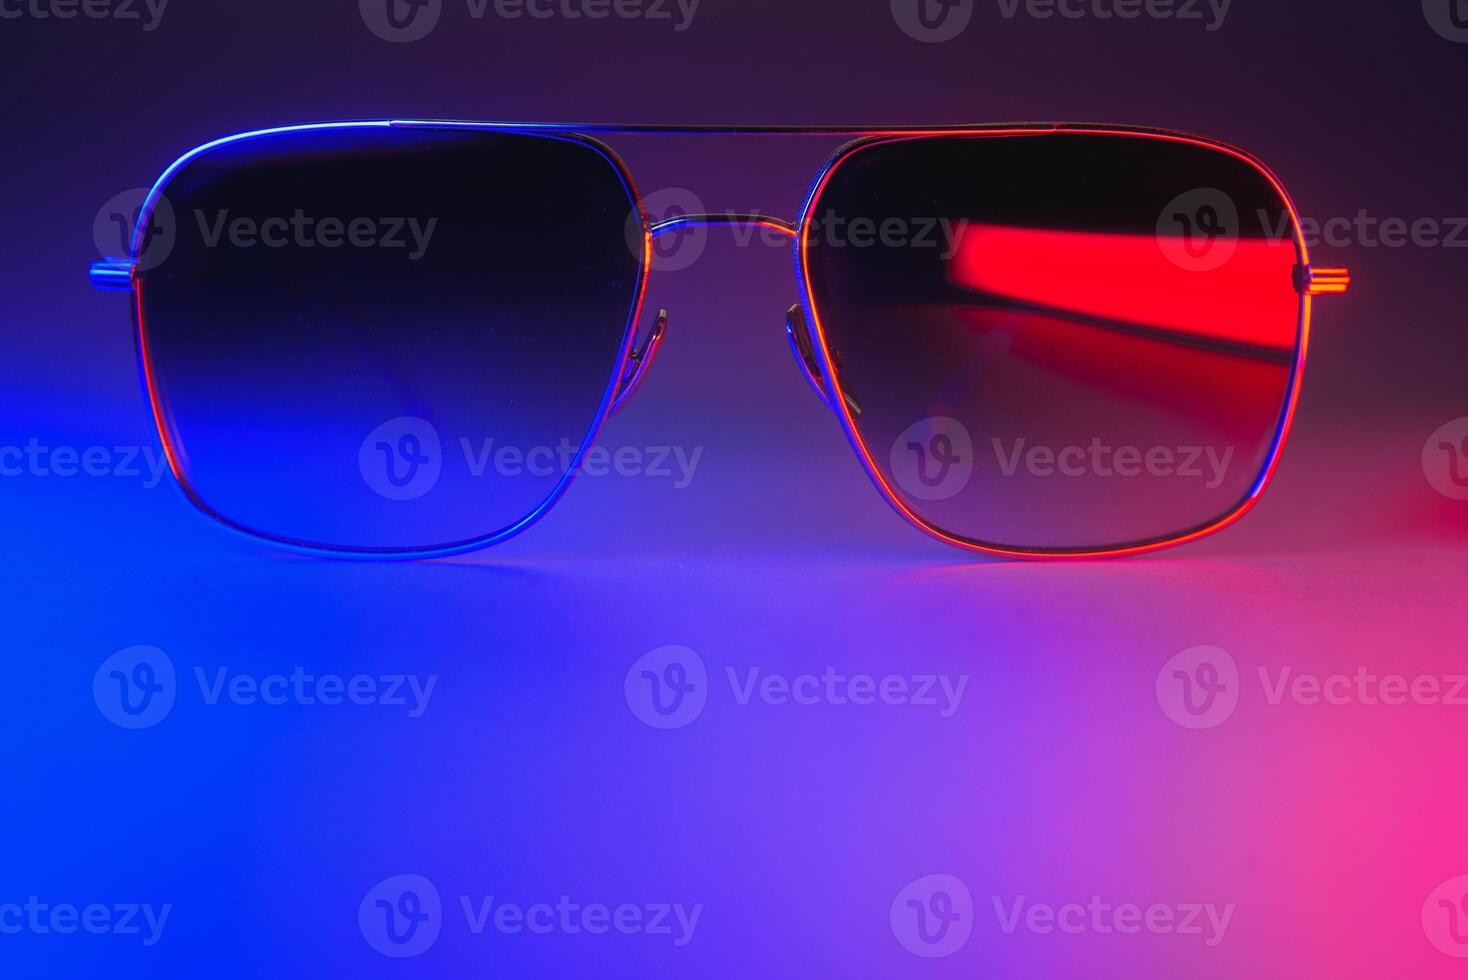 elegante Gafas de sol Disparo utilizando rosado y azul resumen de colores Encendiendo con Copiar espacio. foto